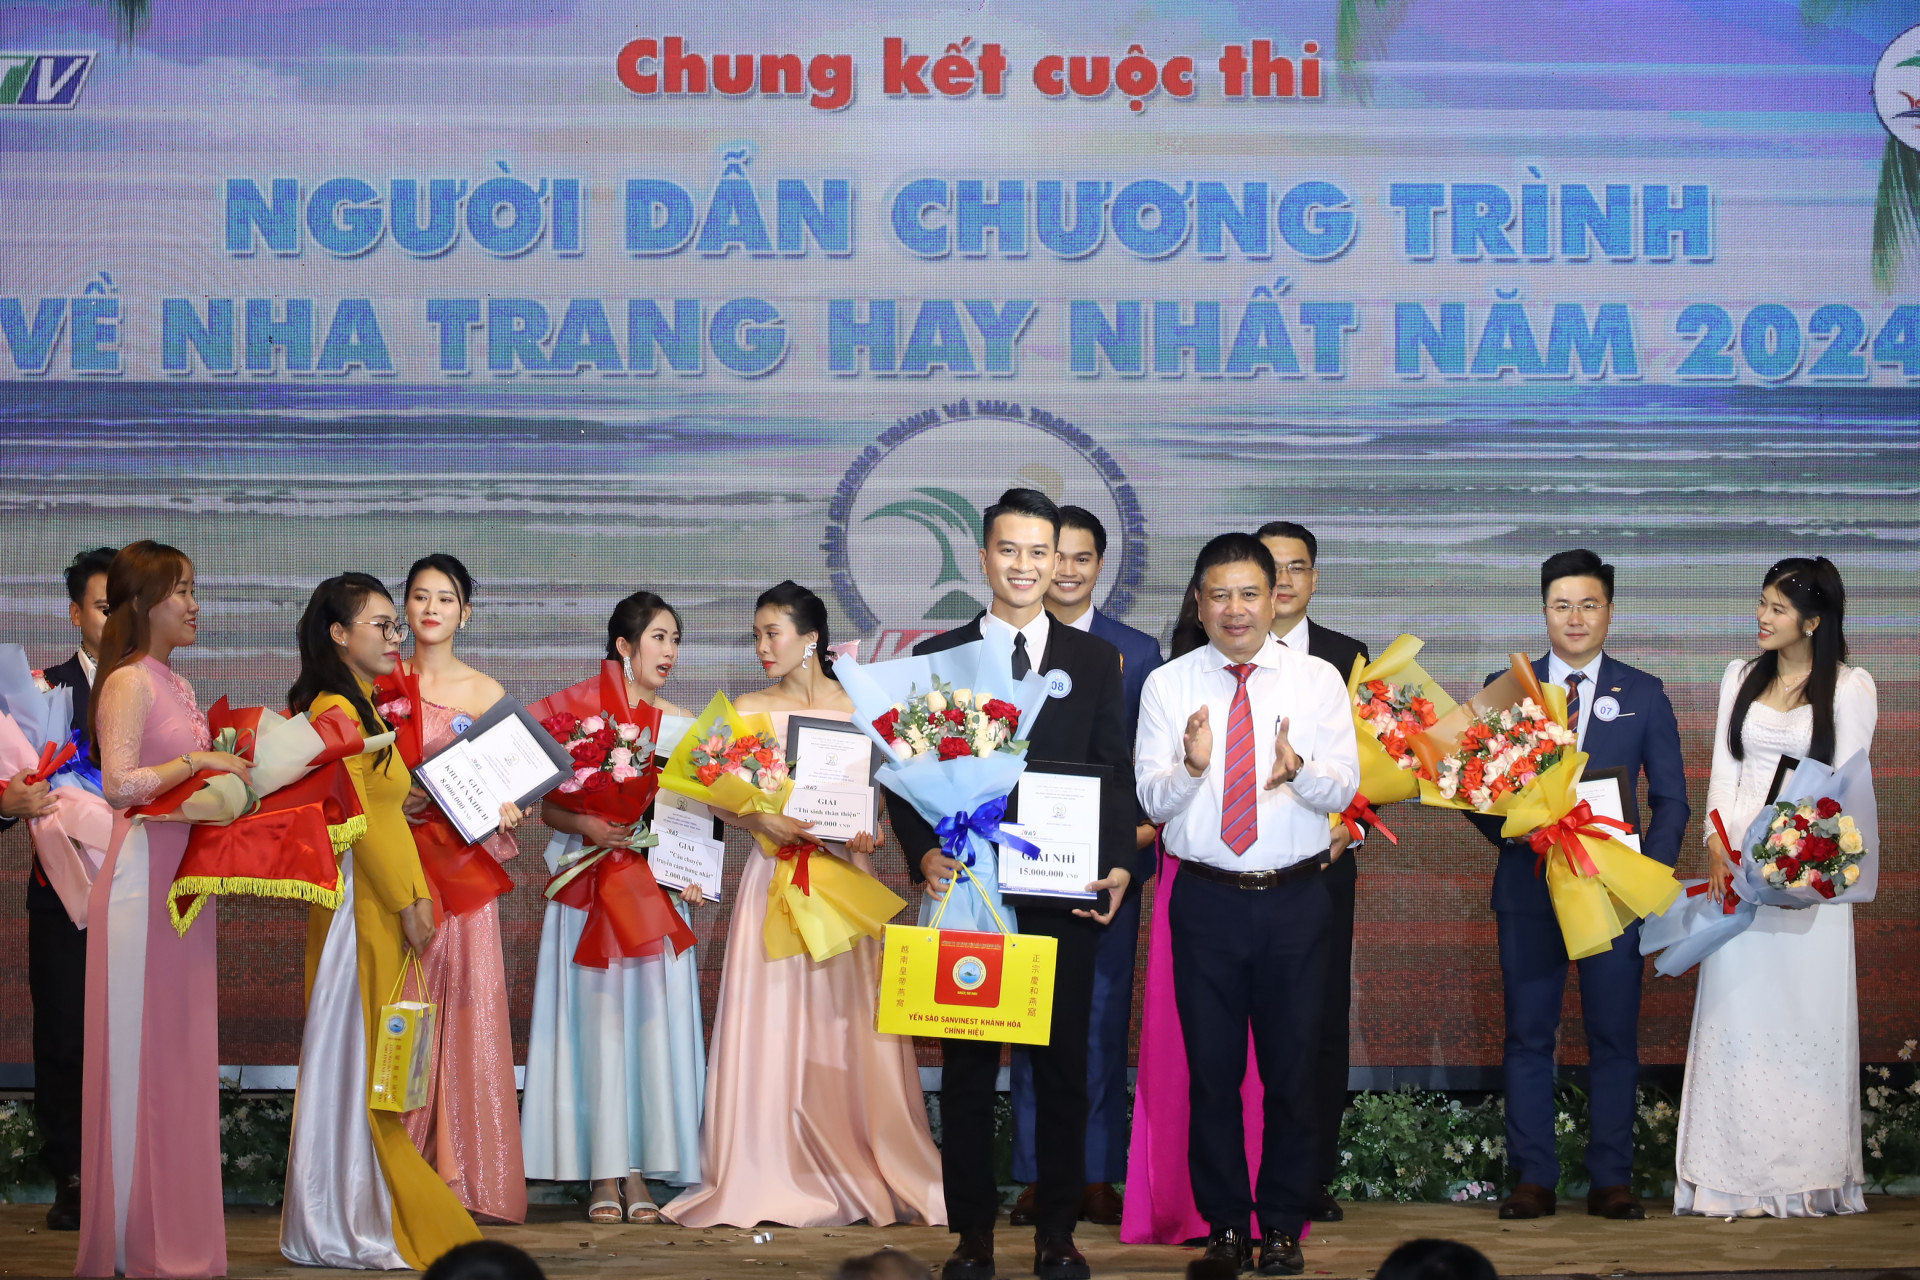 Ông Lê Anh Vũ - Giám đốc Đài Phát thanh và Truyền hình Khánh Hòa trao giải Nhì cho thí sinh Trần Văn Hùng (Đài Phát thanh và Truyền hình Bình Định).